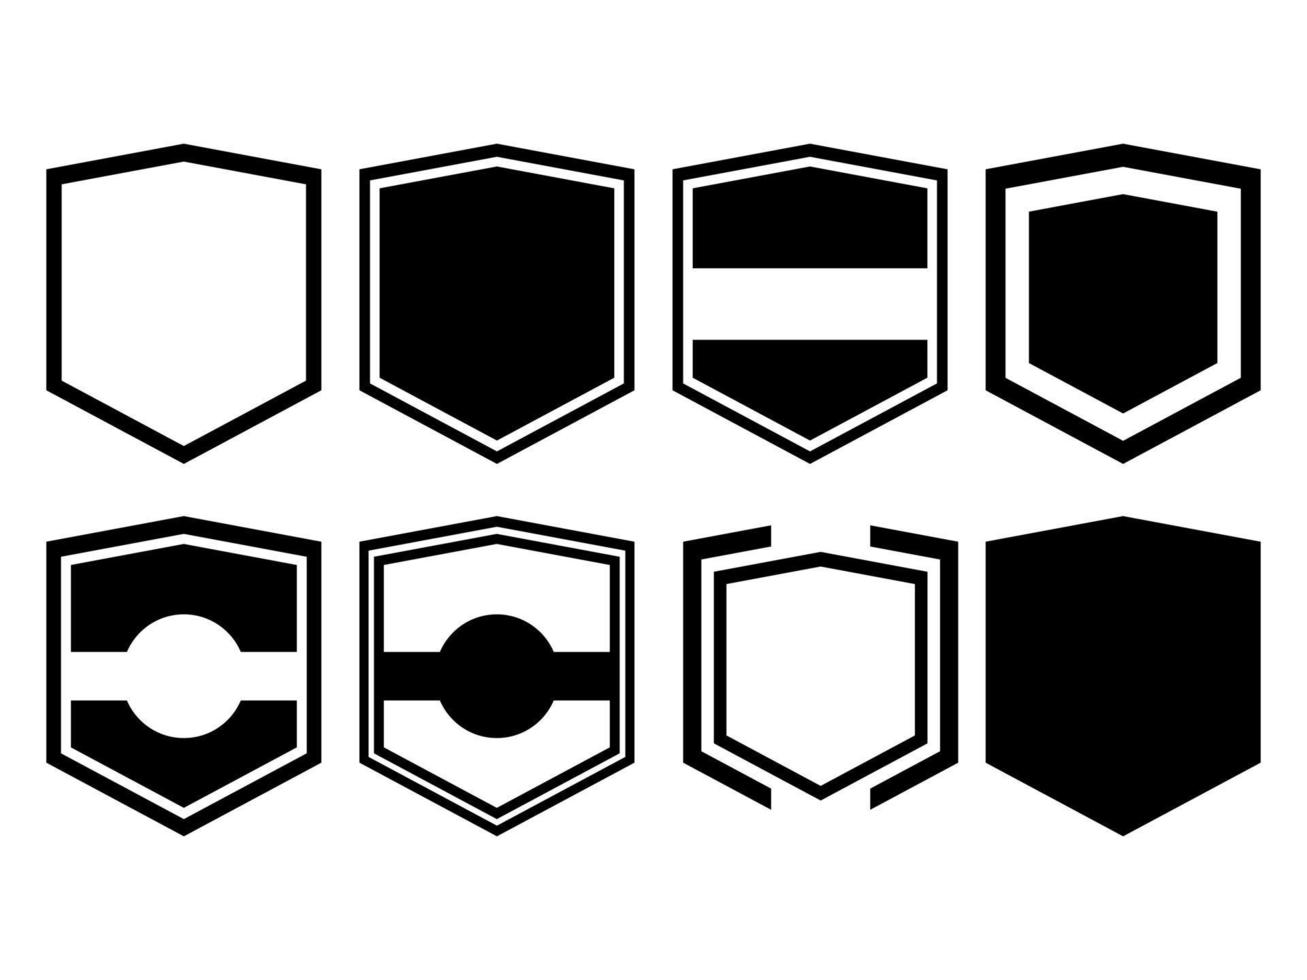 conception graphique de plusieurs emblèmes ou badges pouvant être utilisés en complément de logos ou autres vecteur